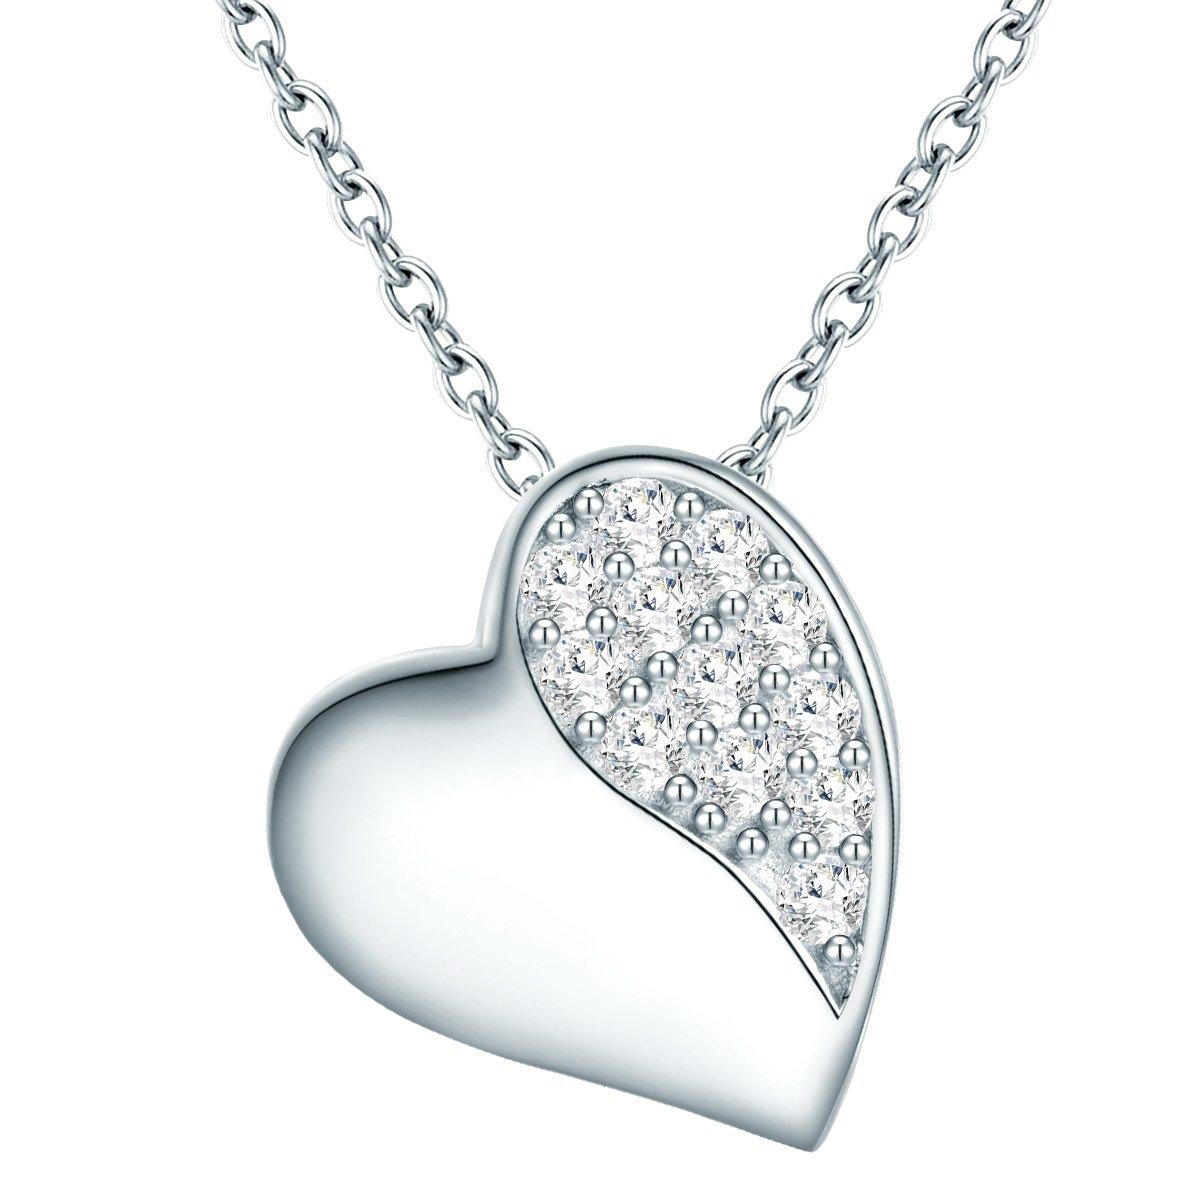 Halskette Herz Damen Silber 40cm von Rafaela Donata